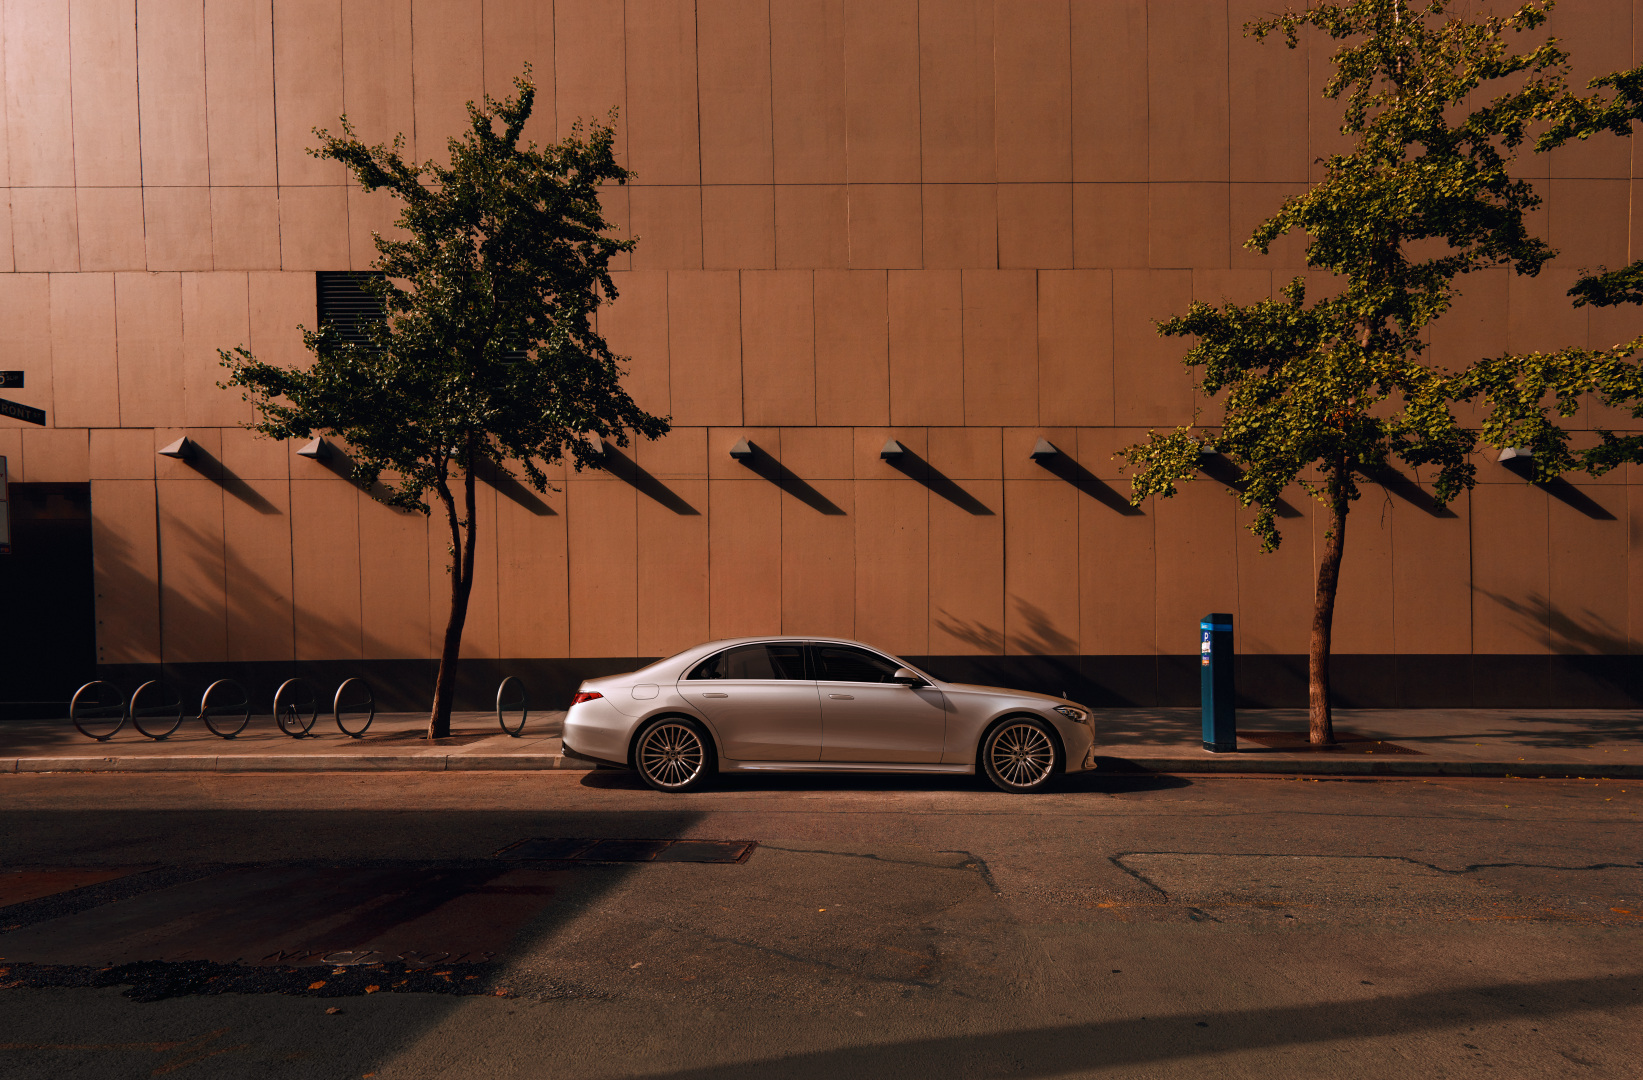 Mercedes Classe S Limousine Grise en mouvement, vue de trois quarts profil